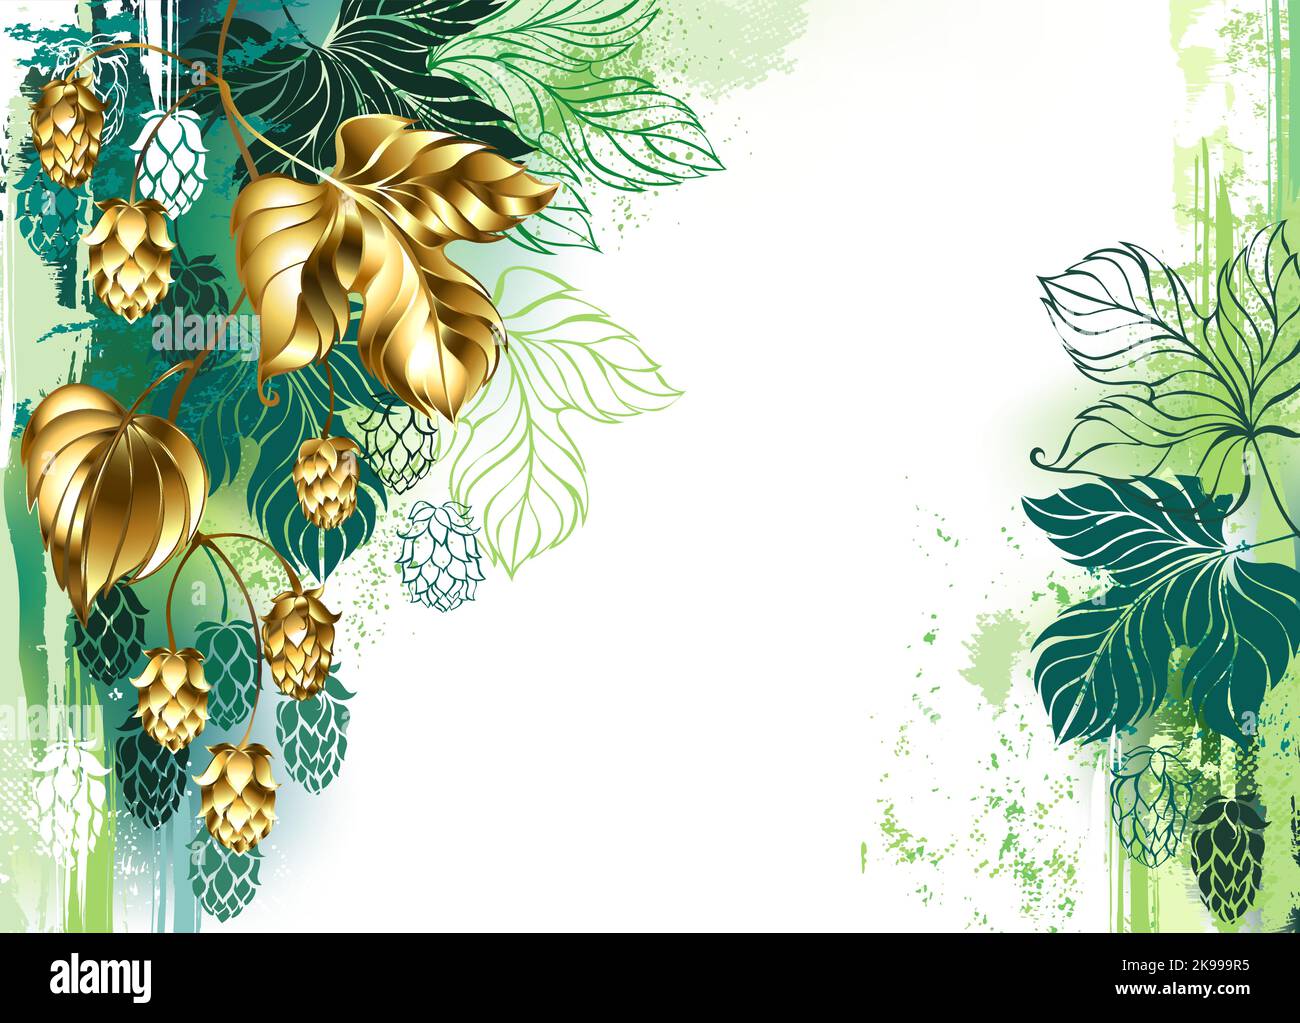 Bemalt mit grüner Farbe, heller Hintergrund, verziert mit Zweig aus goldenem, glänzendem Schmuckhopfen mit schönen goldenen Zapfen. Golden Hop. Stock Vektor